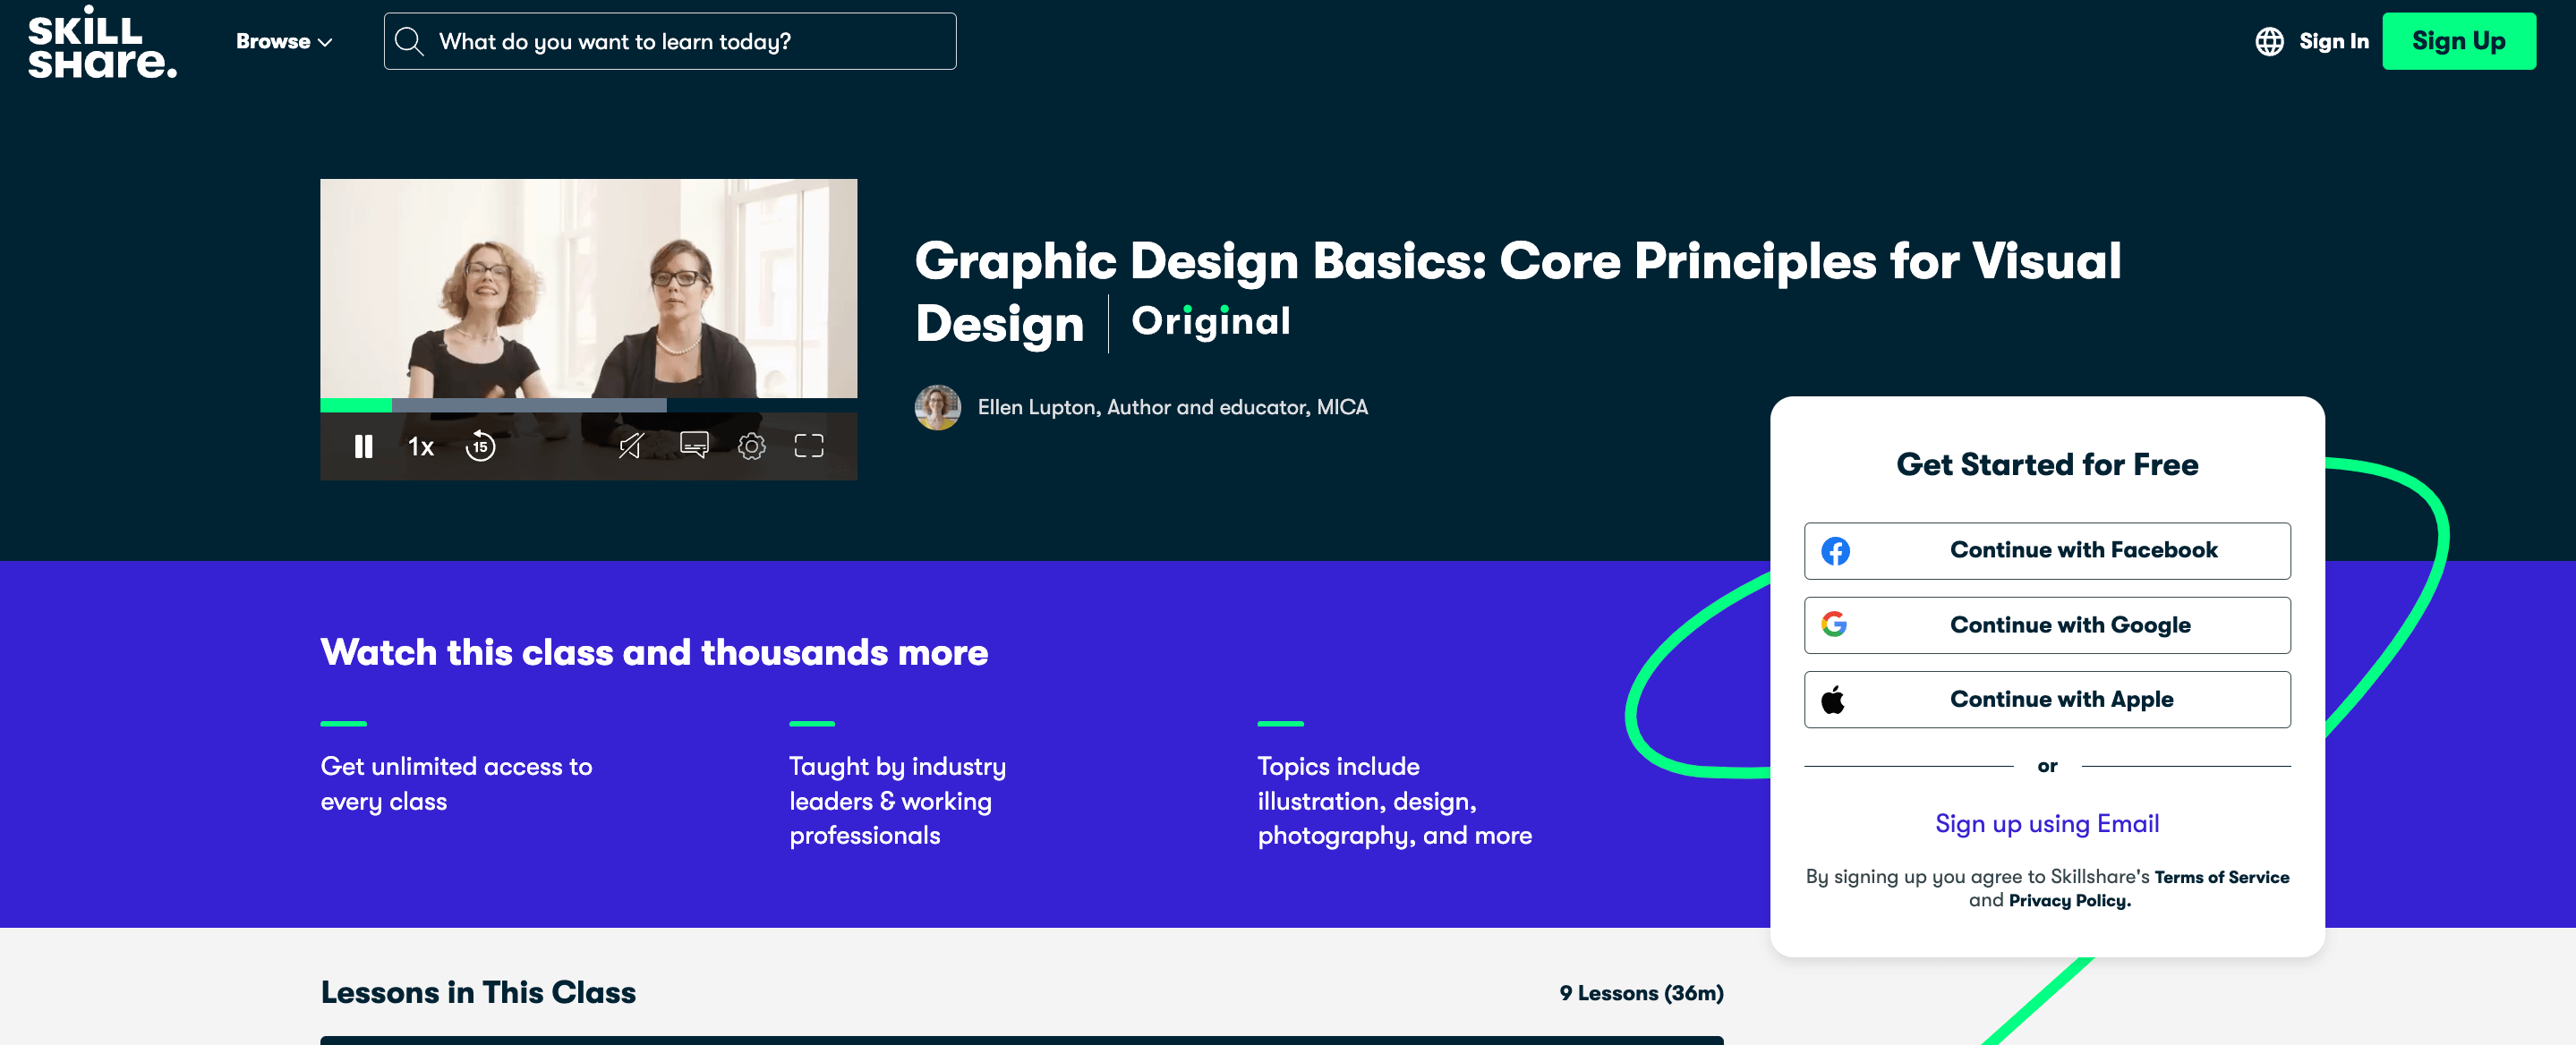 Homepage of Skillshare's Graphic Design Class